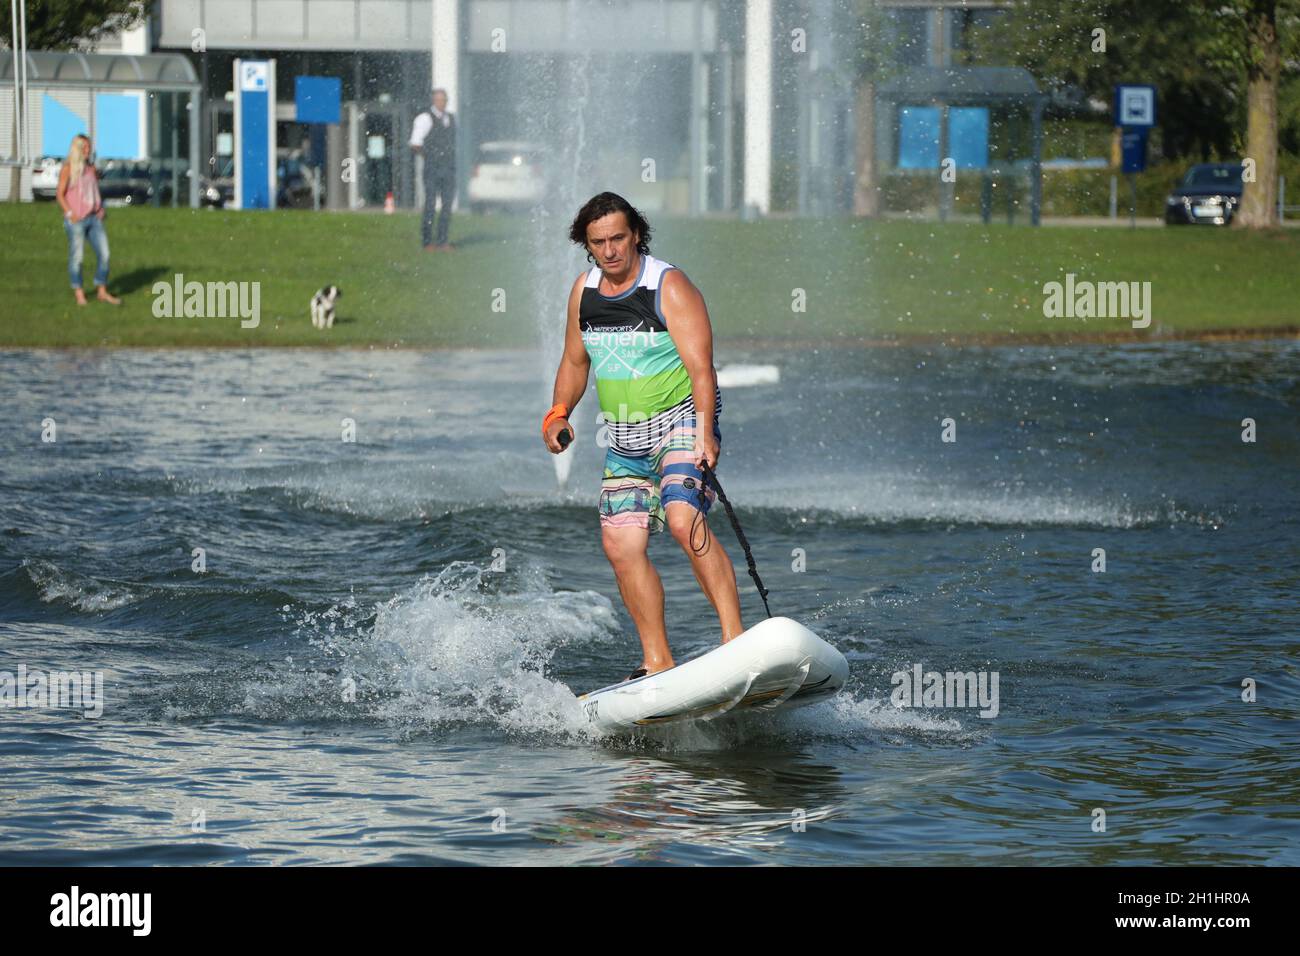 Elektro SUPs Surfer auf der Fachmesse Interboot 2020 Friedrichshafen Stock  Photo - Alamy